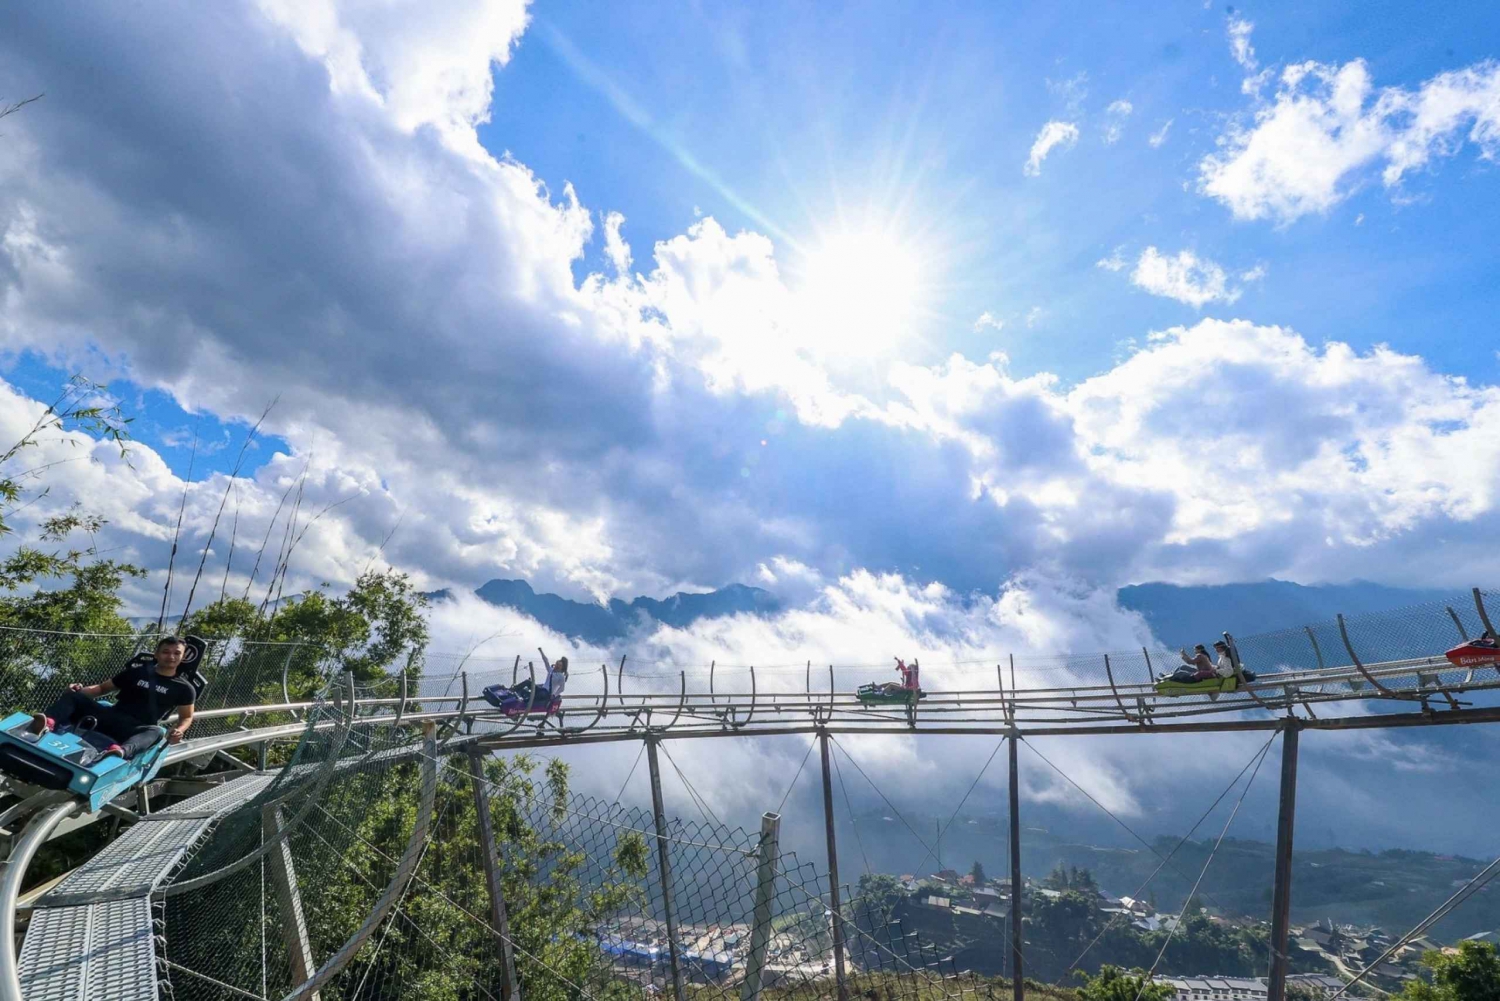 Alpine Coaster Ban Mong ervaring in Sapa - Vietnam